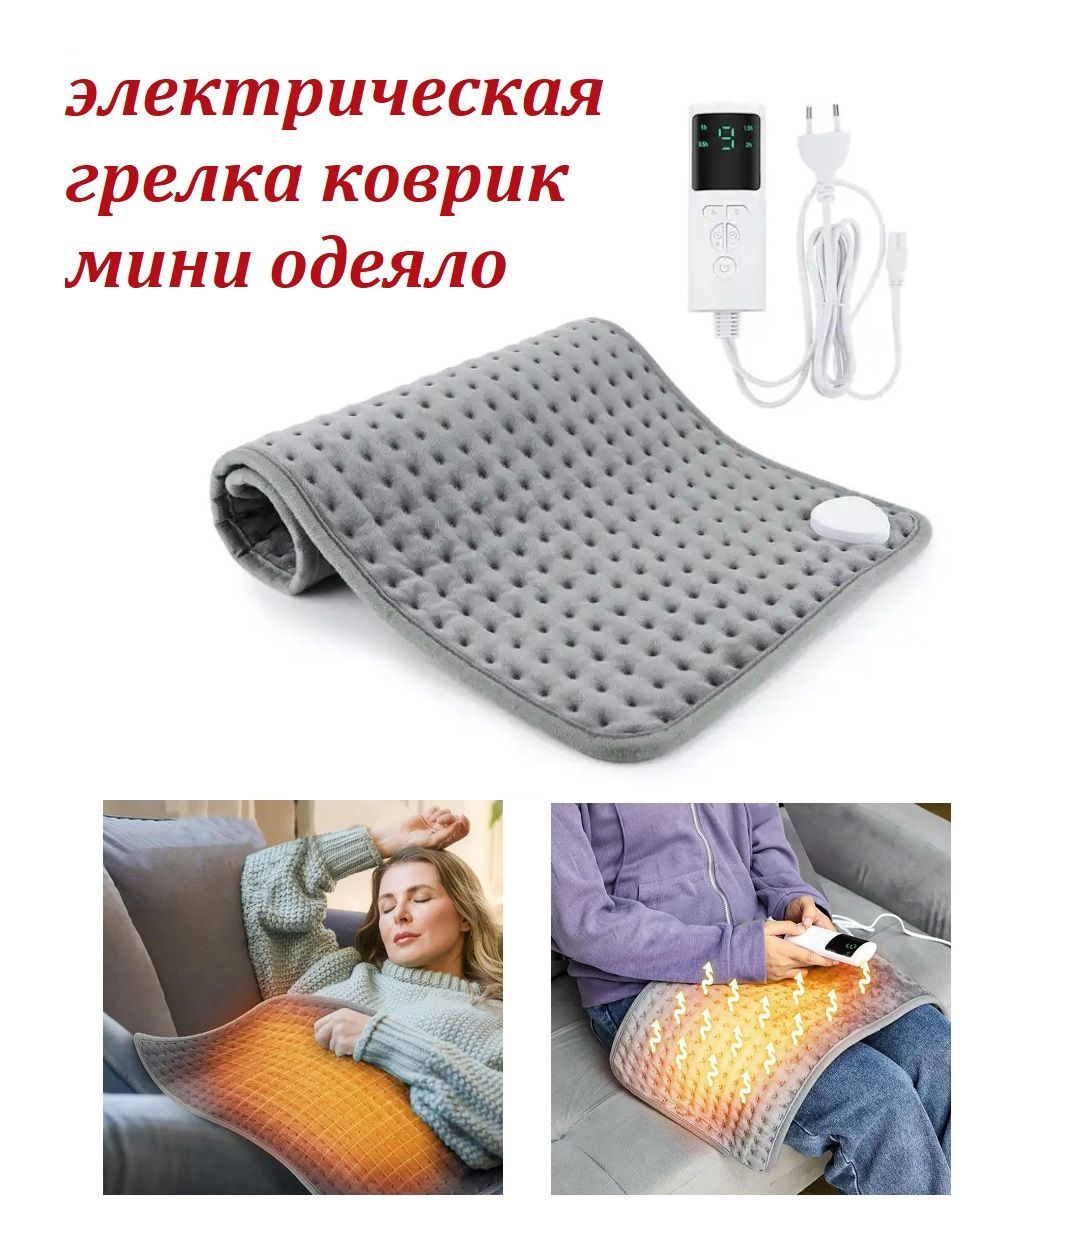 Электрическая грелка коврик TOP-Store с пультом управления